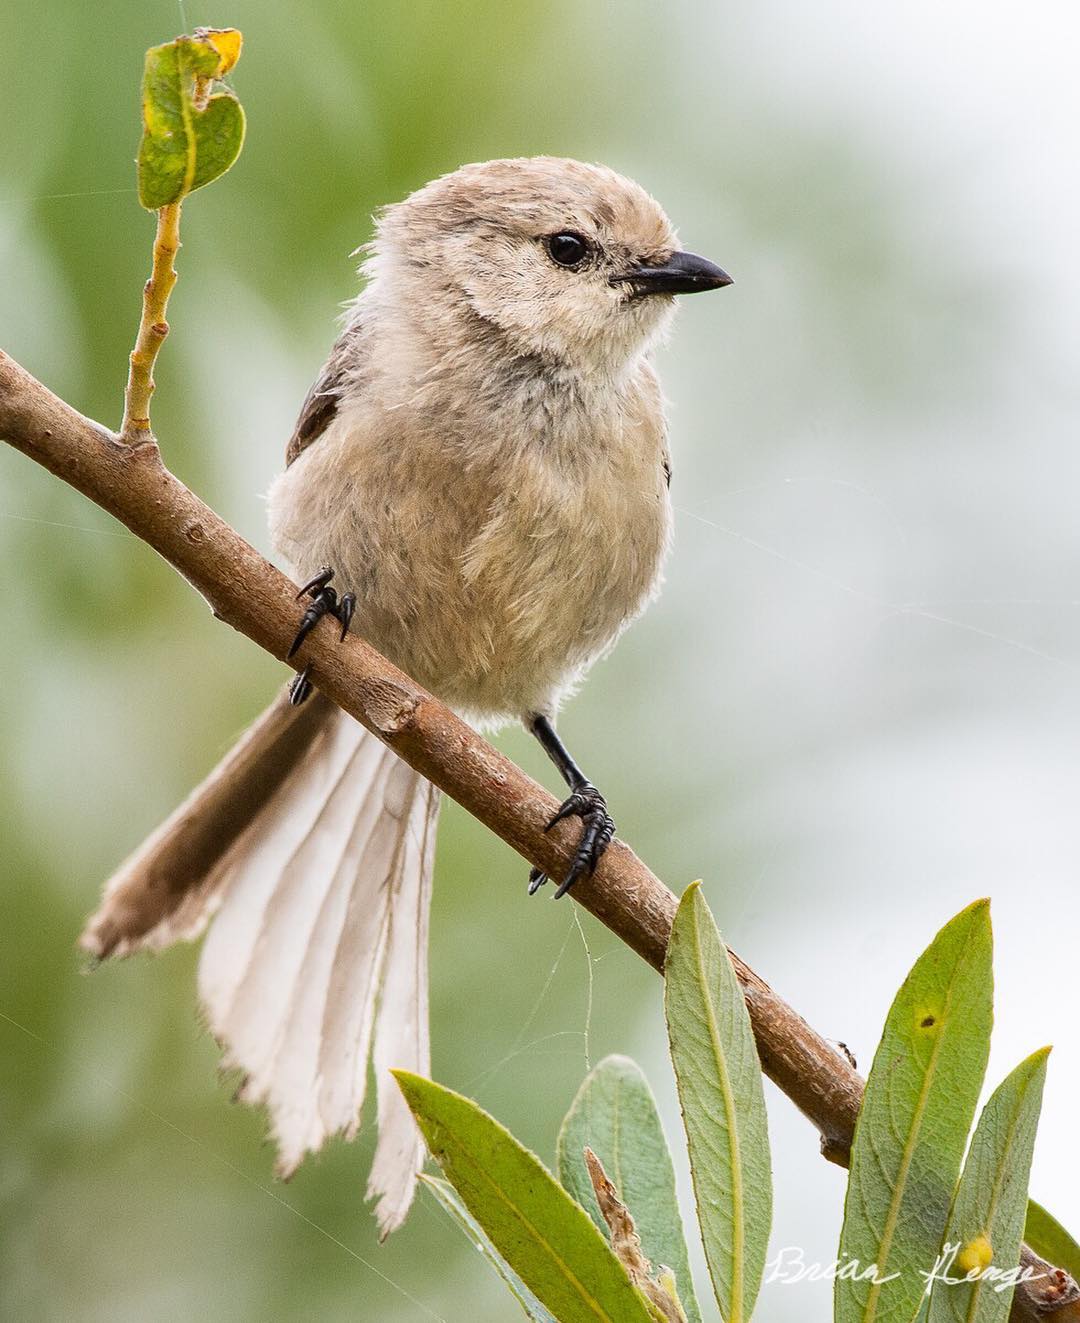 Птицы на снимках 17-летнего фотографа Брайана Генге